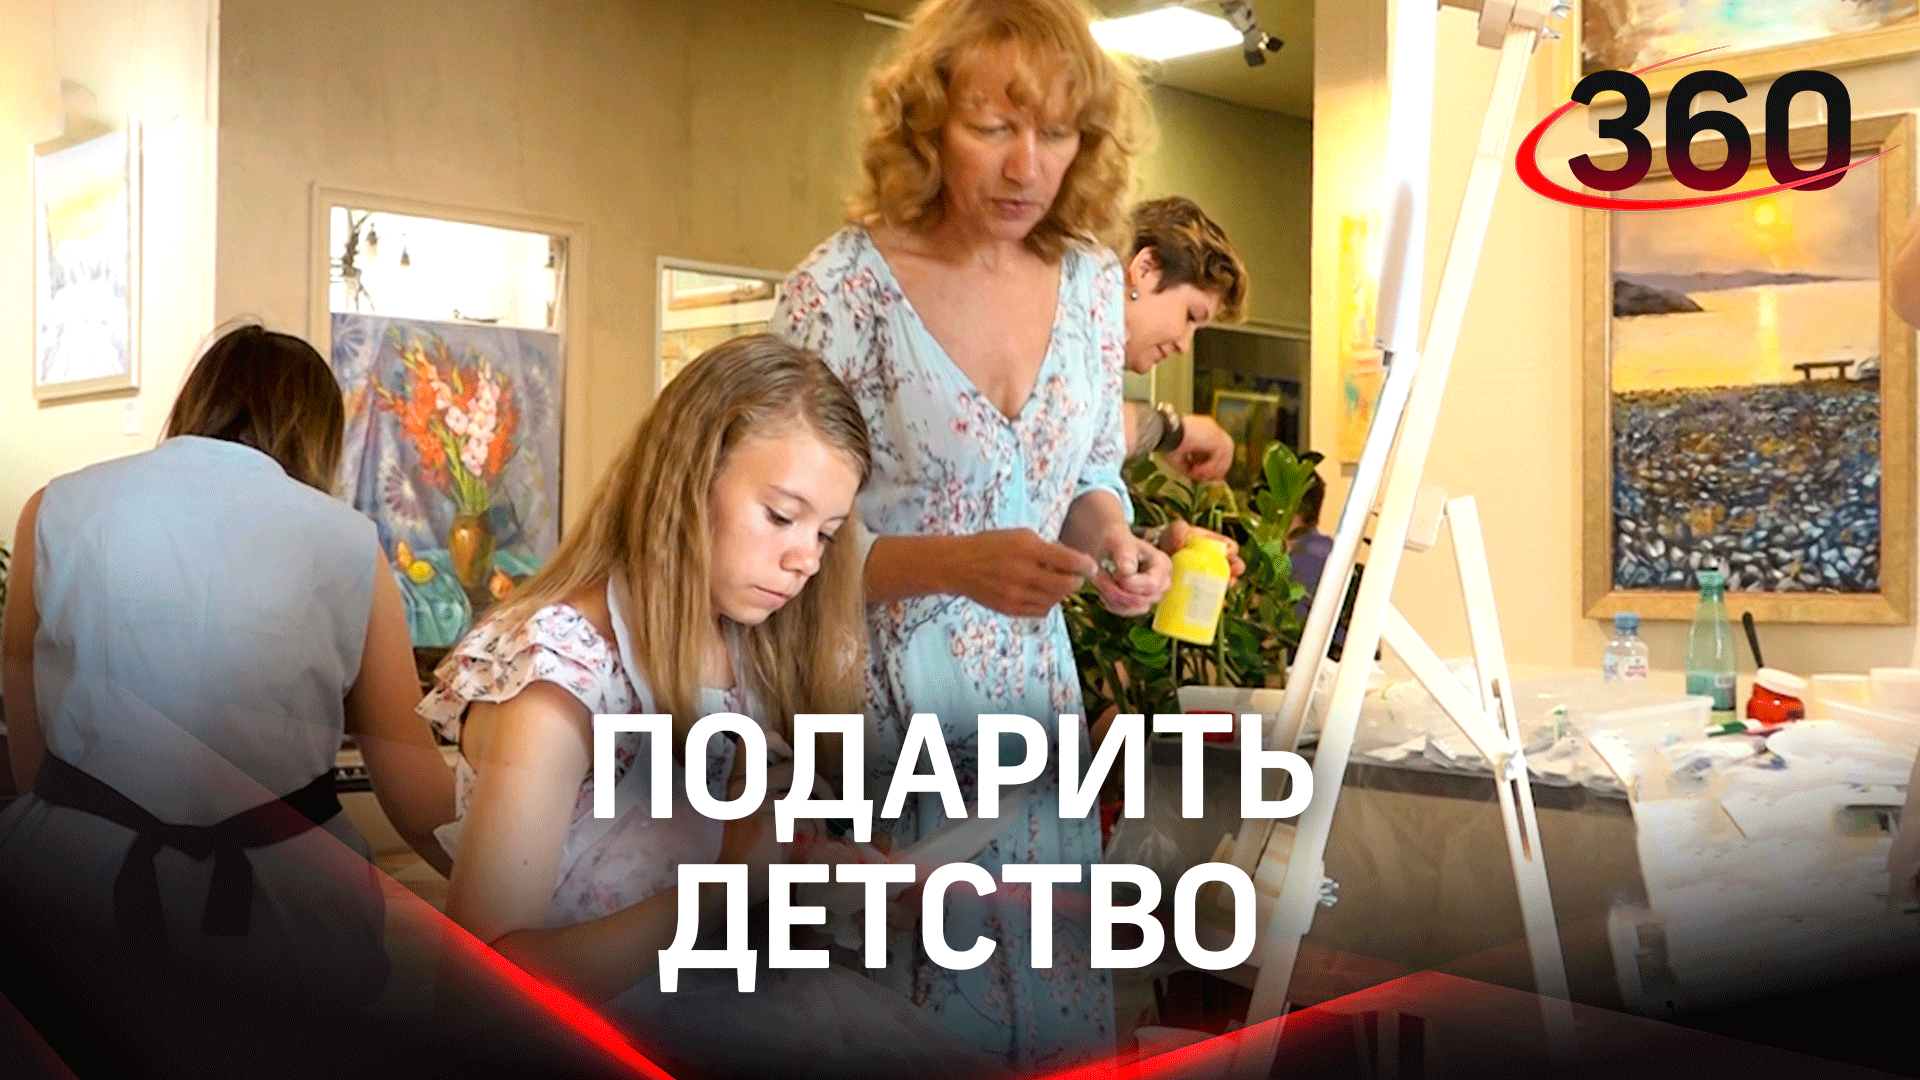 Обрести детство: благотворительный мастер-класс для детей из Донбасса прошел в Москве